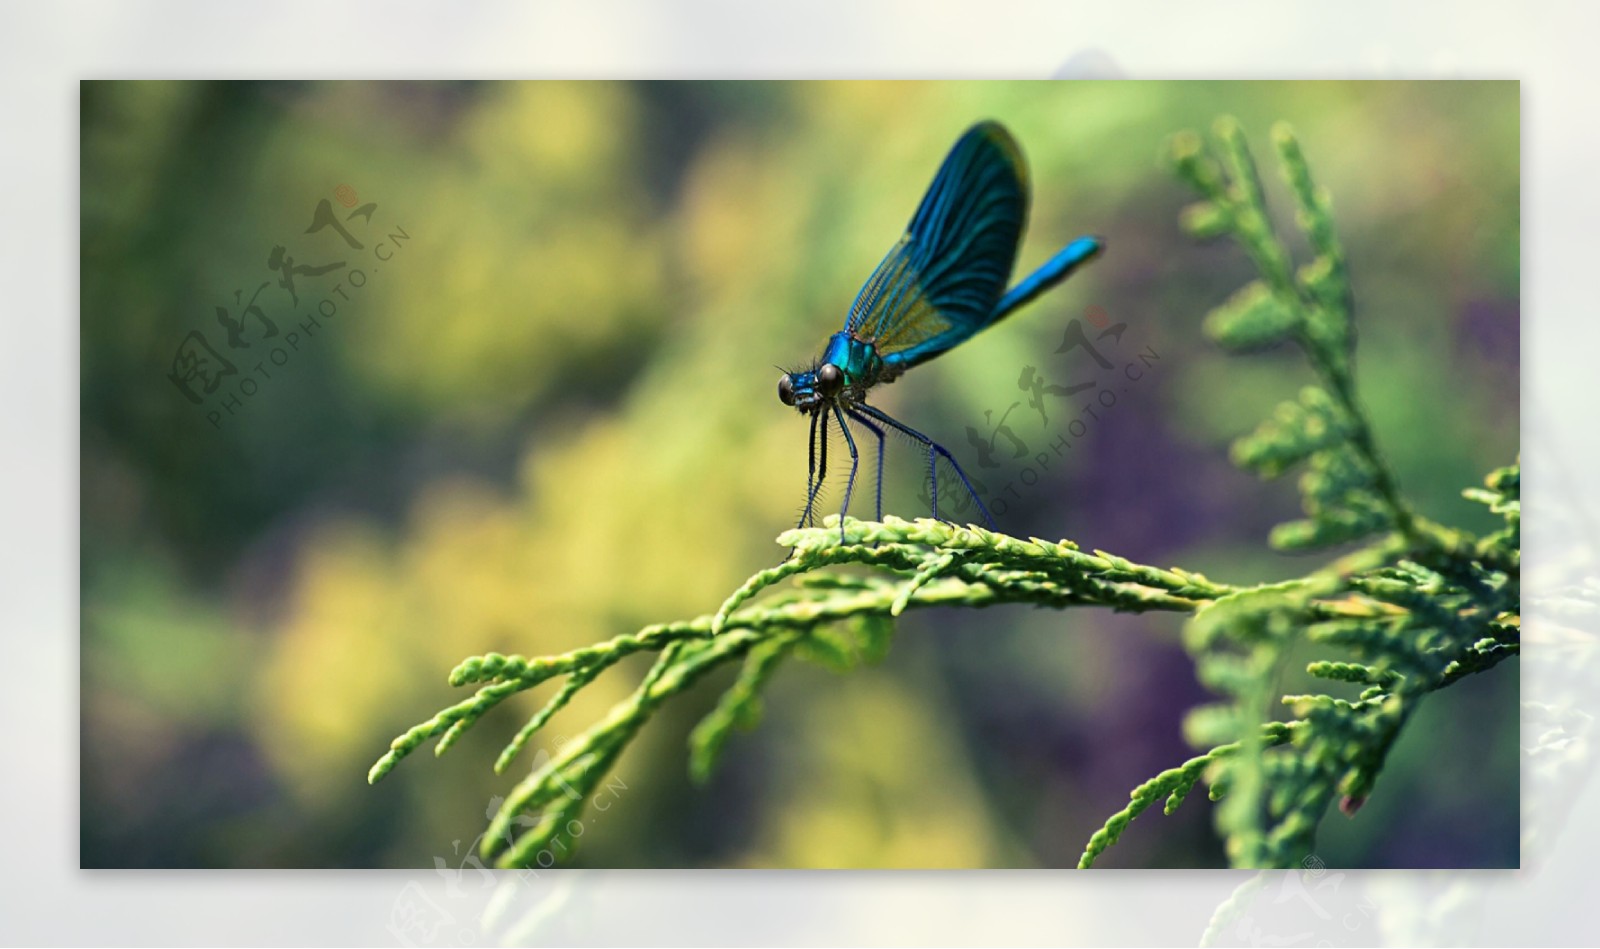 落在植物上的小蓝蜻蜓